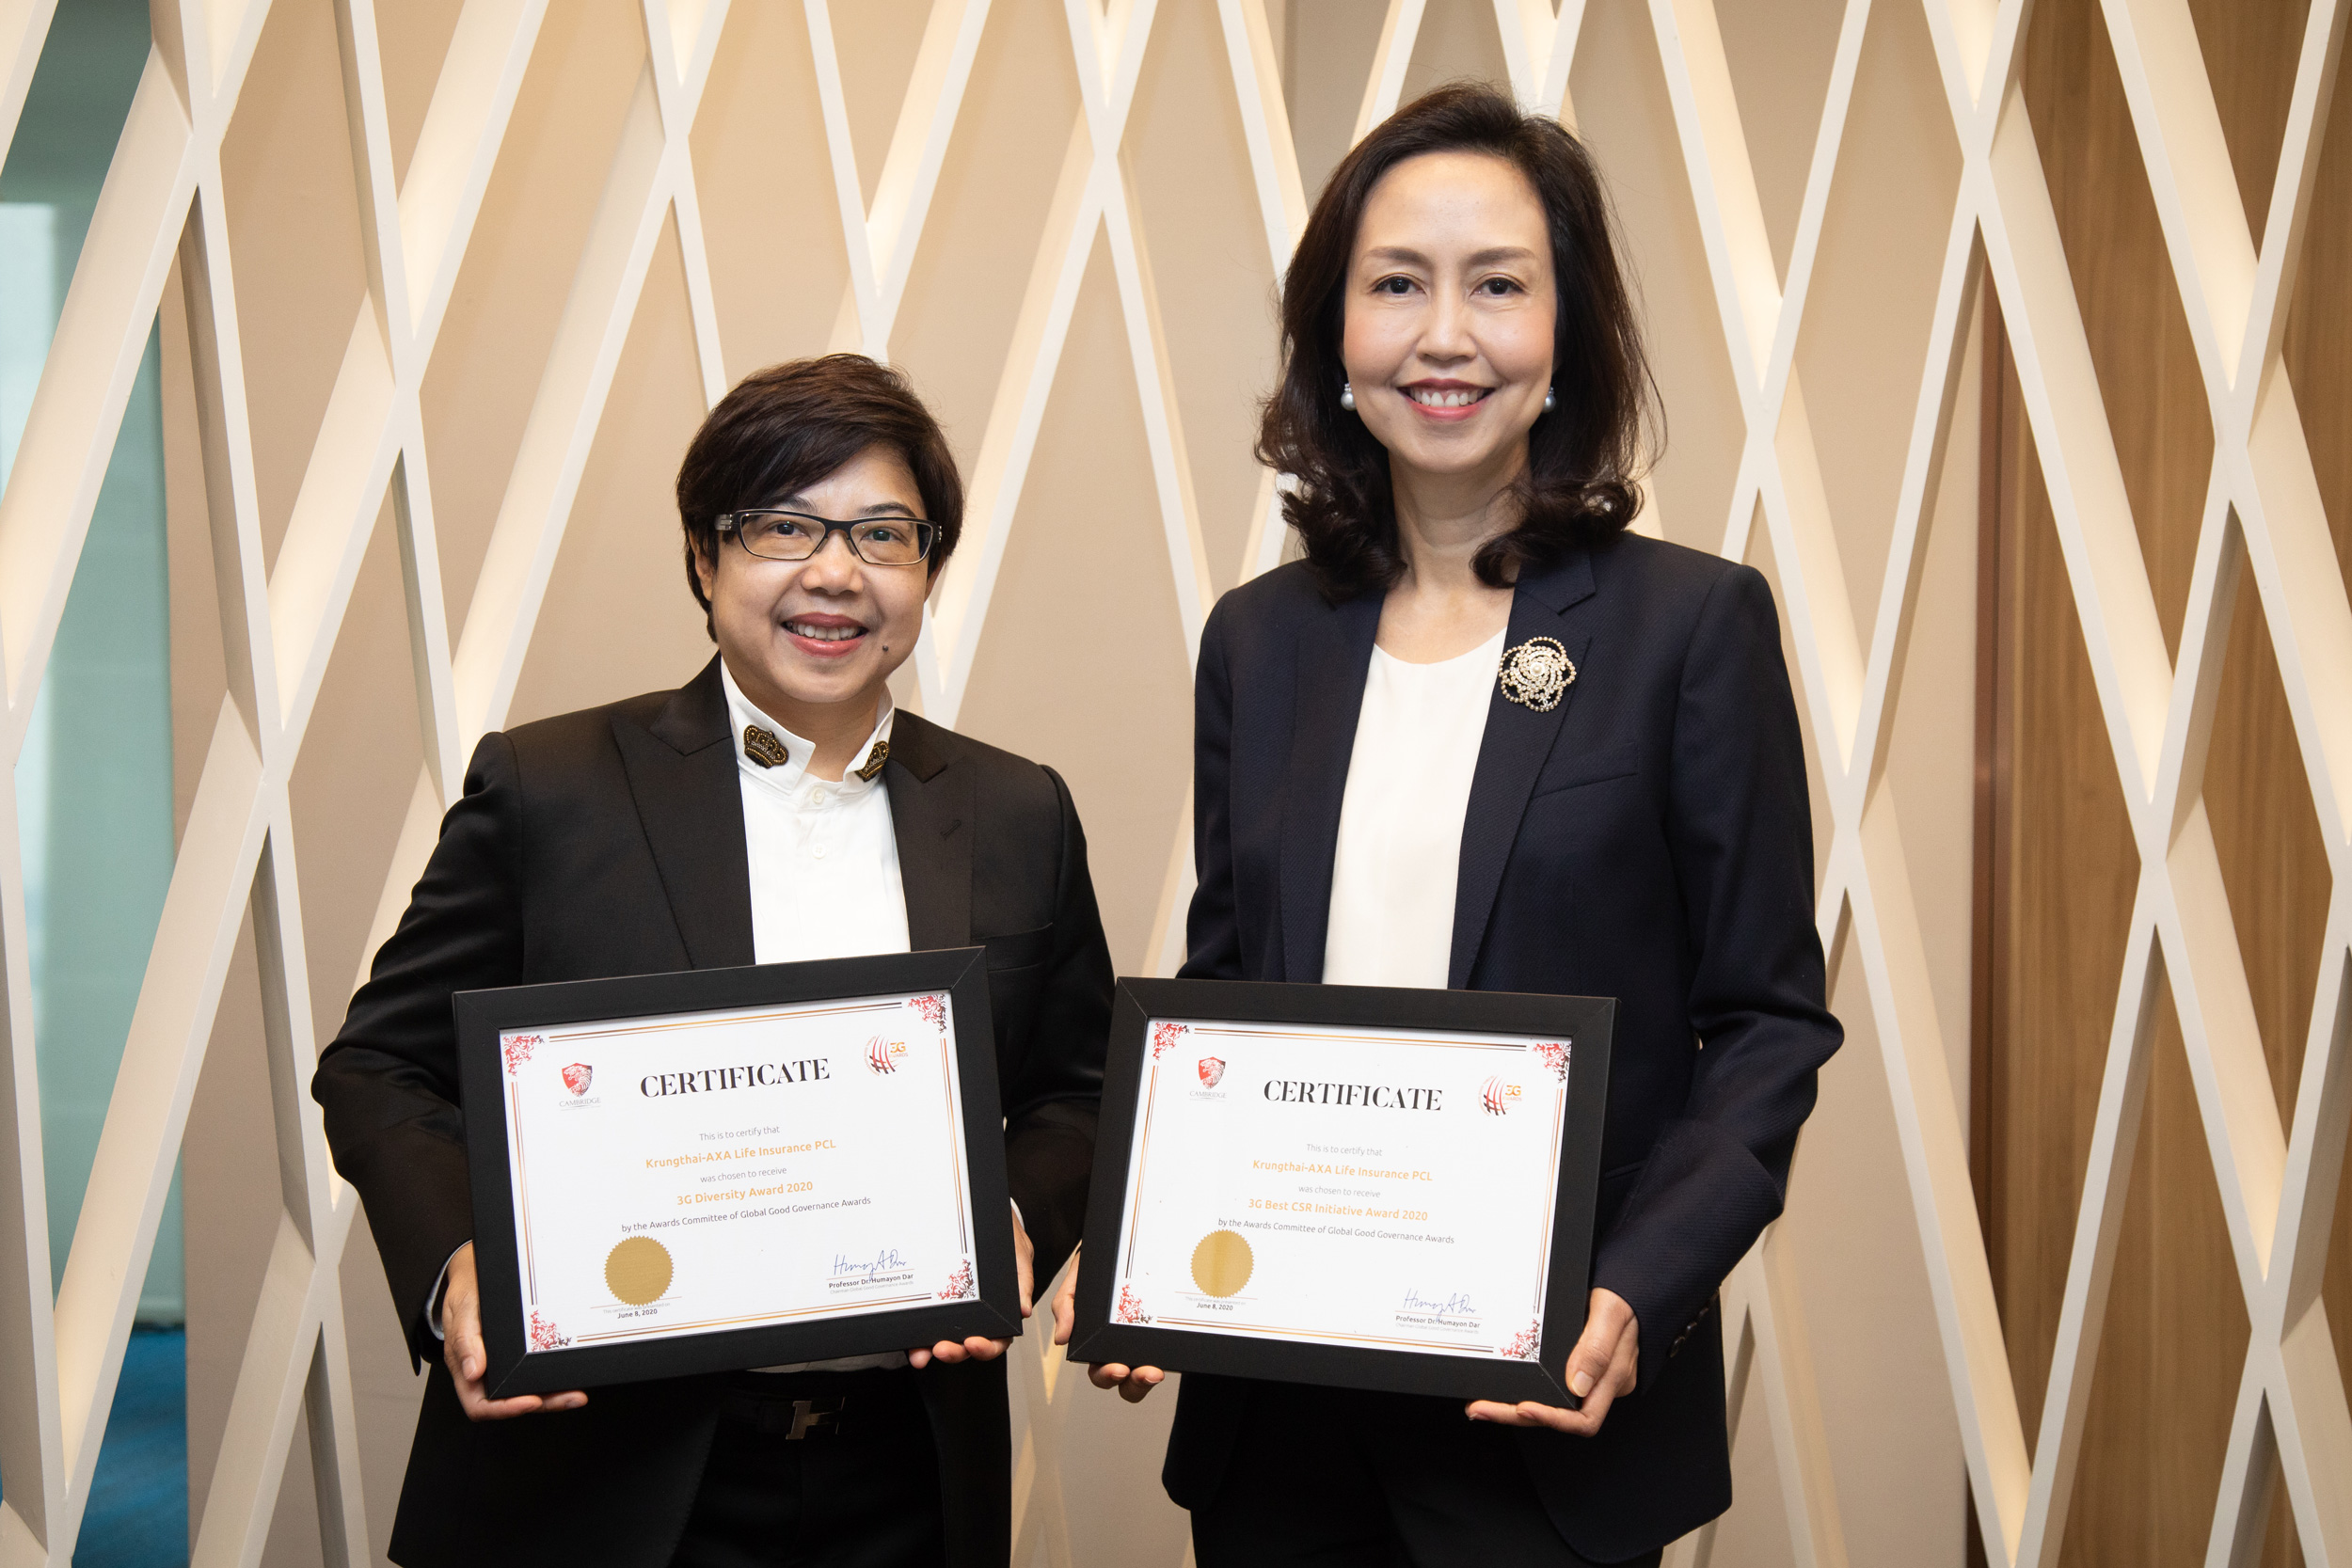 บมจ.กรุงไทยแอกซ่า ประกันชีวิต คว้า 2 รางวัล ระดับนานาชาติ จาก Global Good Governance Awards 2020